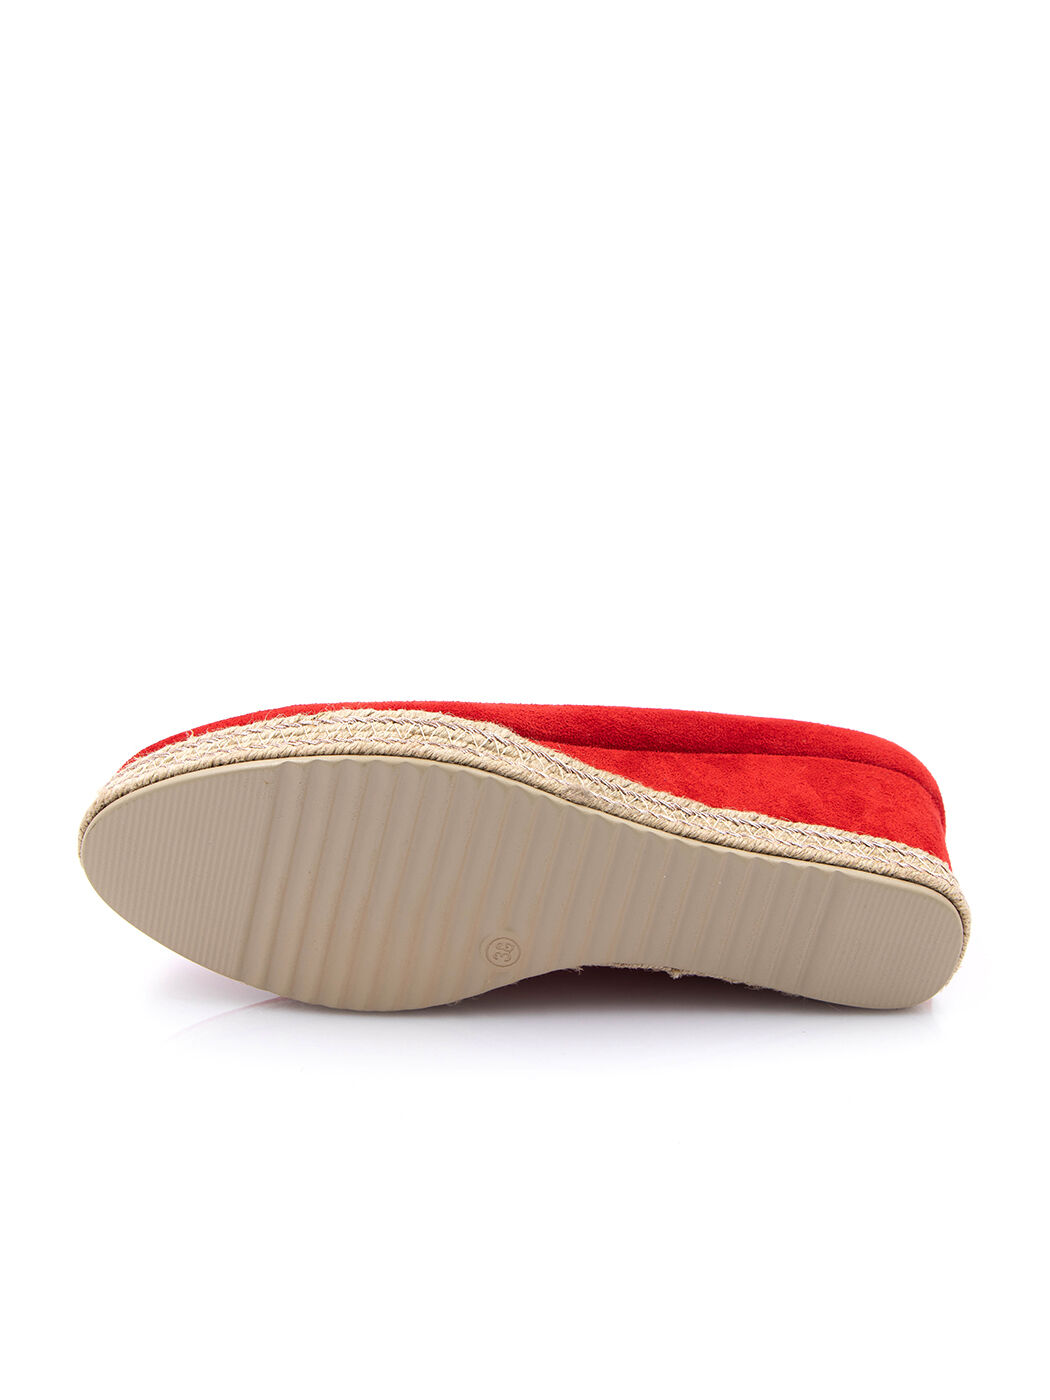 Туфли женские красные экозамша каблук устойчивый демисезон от производителя 4M вид 2